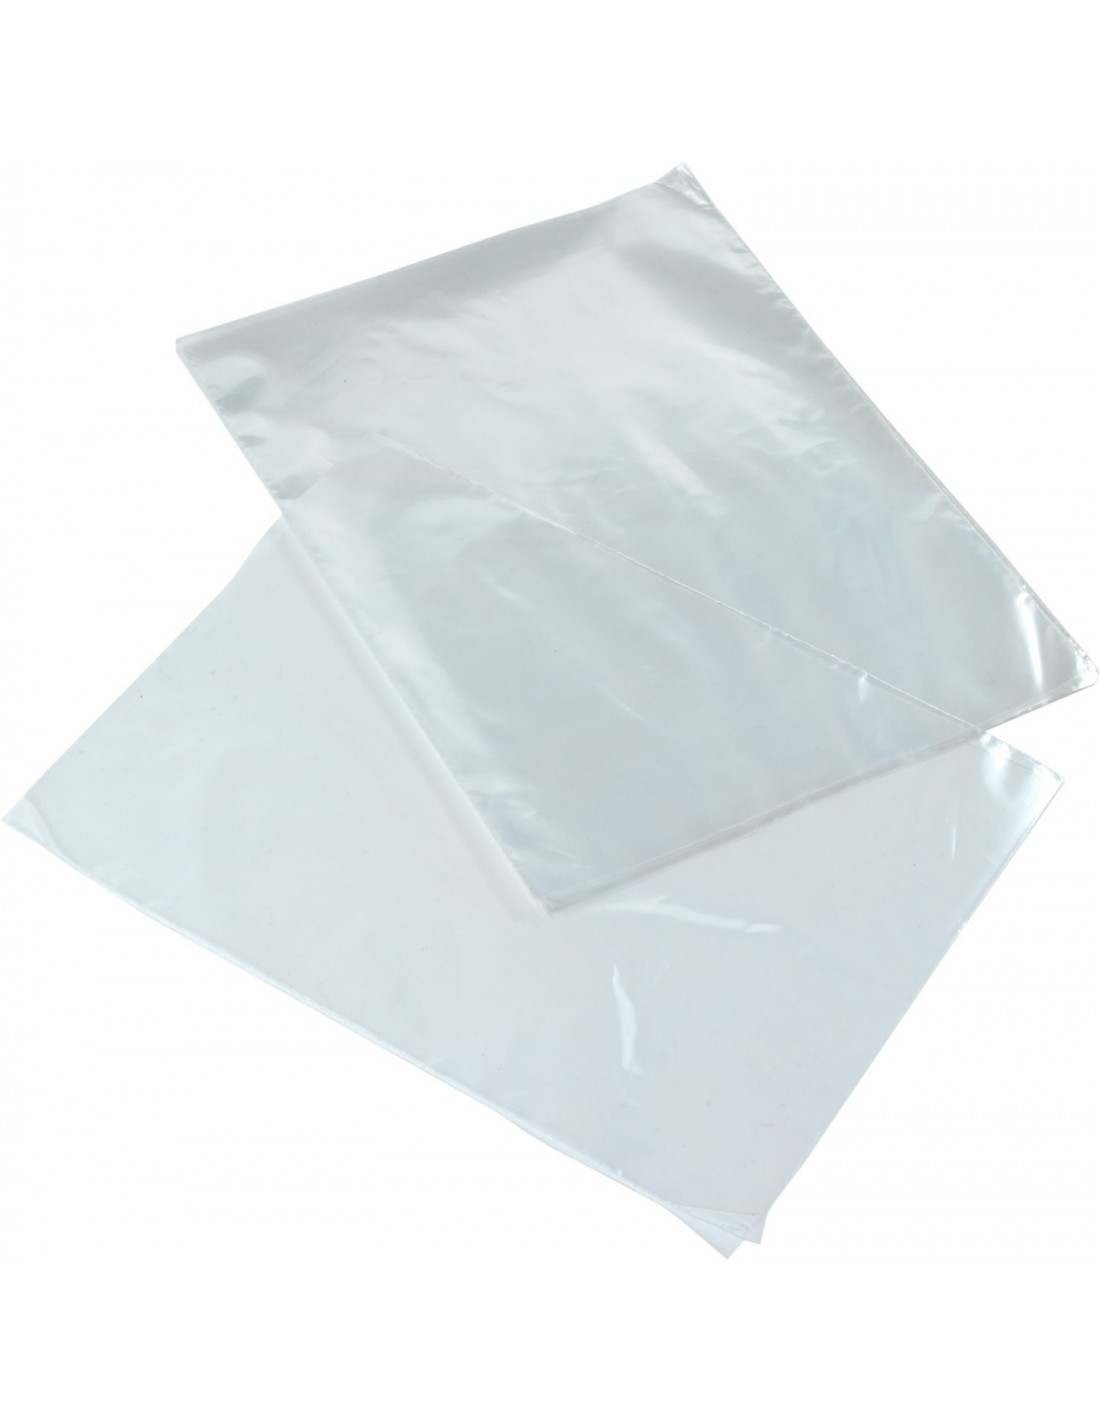 Disponible bolsas de celofán autoadhesivas, sin adhesivo y con